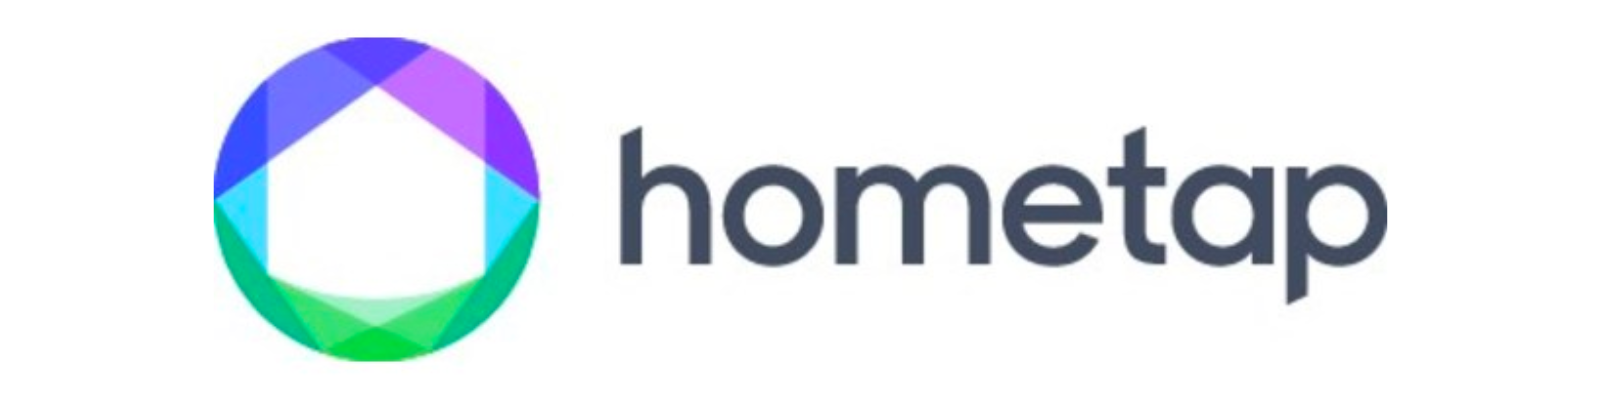 hometap logo